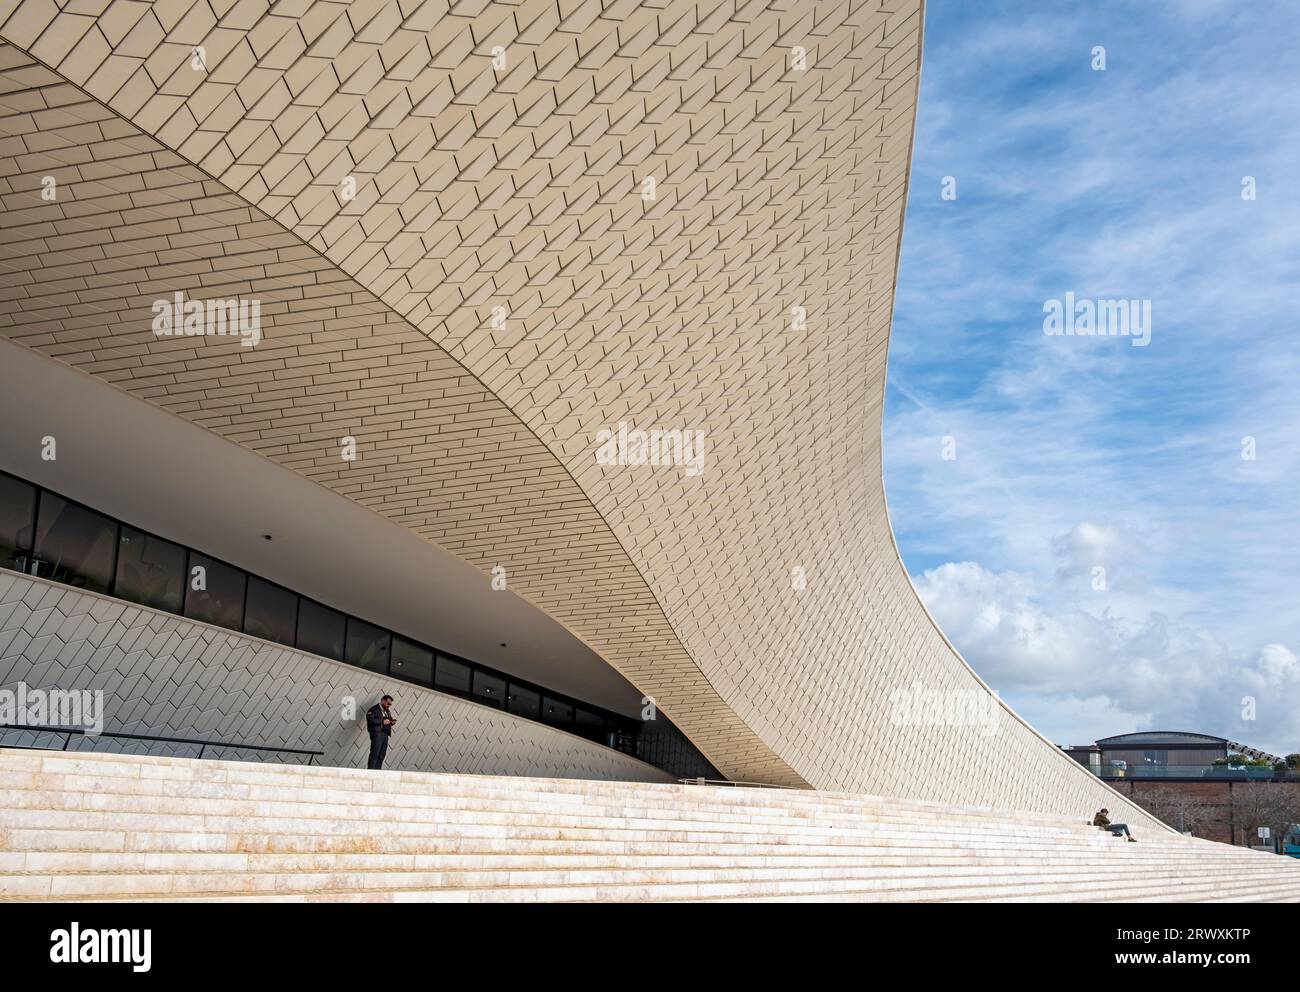 MAAT - Musée d'Art, d'Architecture et de technologie - Bâtiment, Belem, Lisbonne, Portugal Banque D'Images